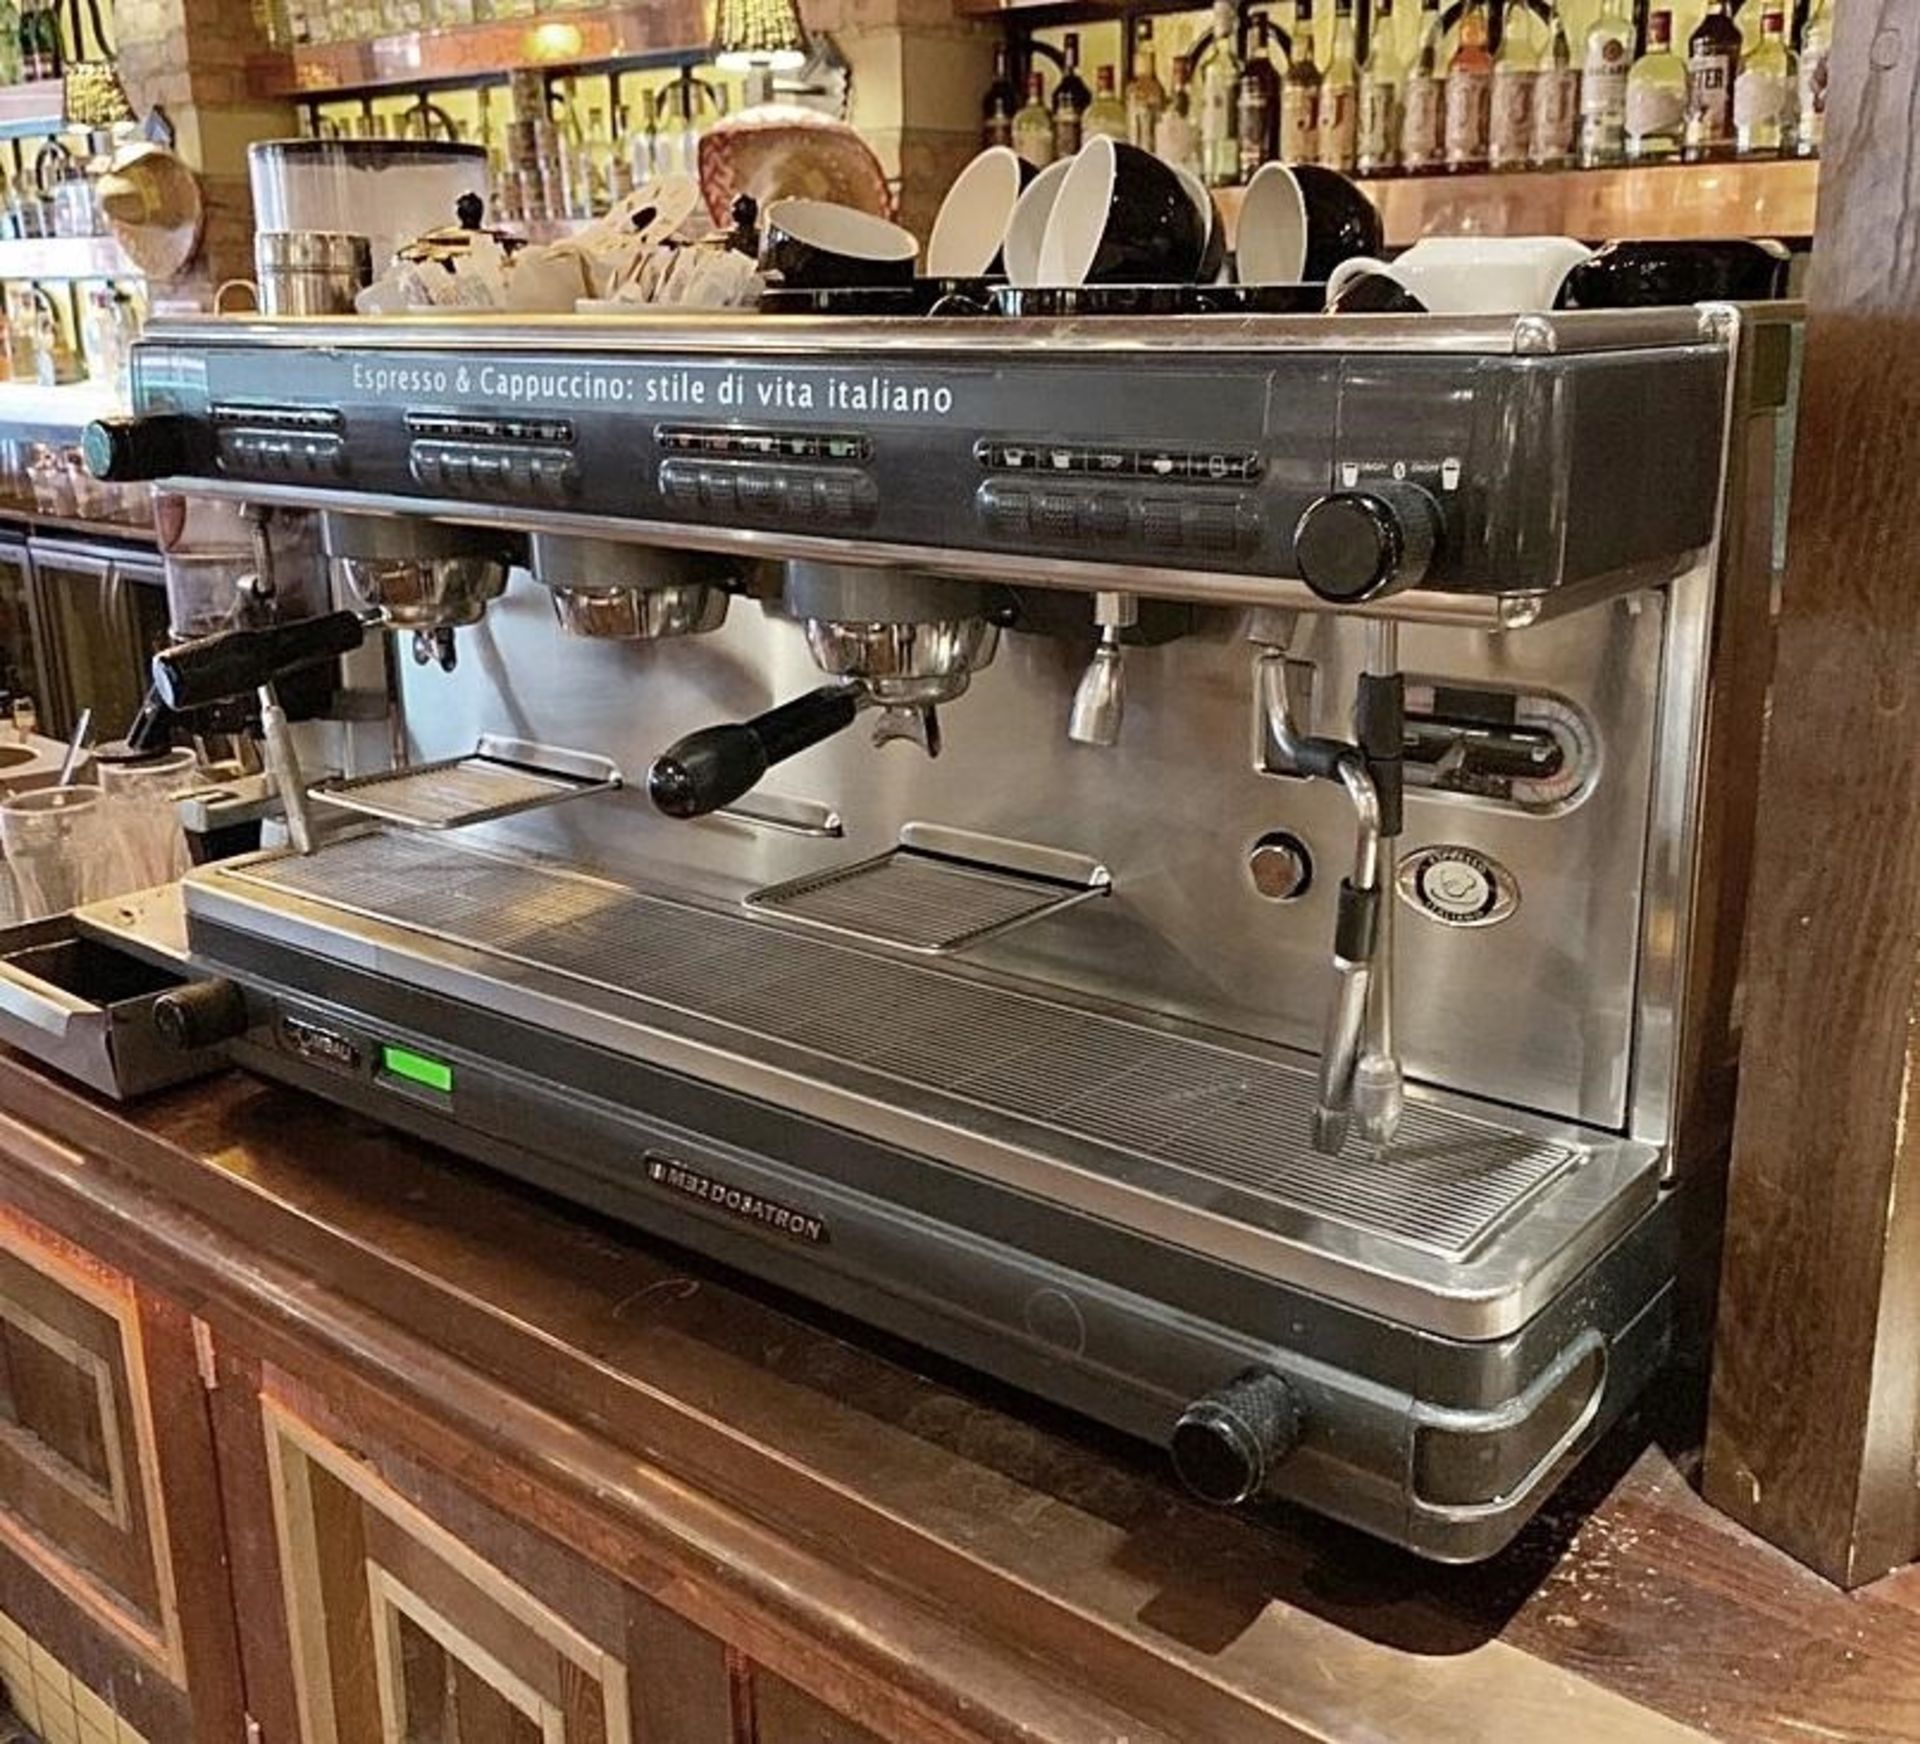 1 x La Cimbalie Espresso & Cappucino 3 Group Coffee Espresso Machine - Model M2 Dosatron - - Image 3 of 4